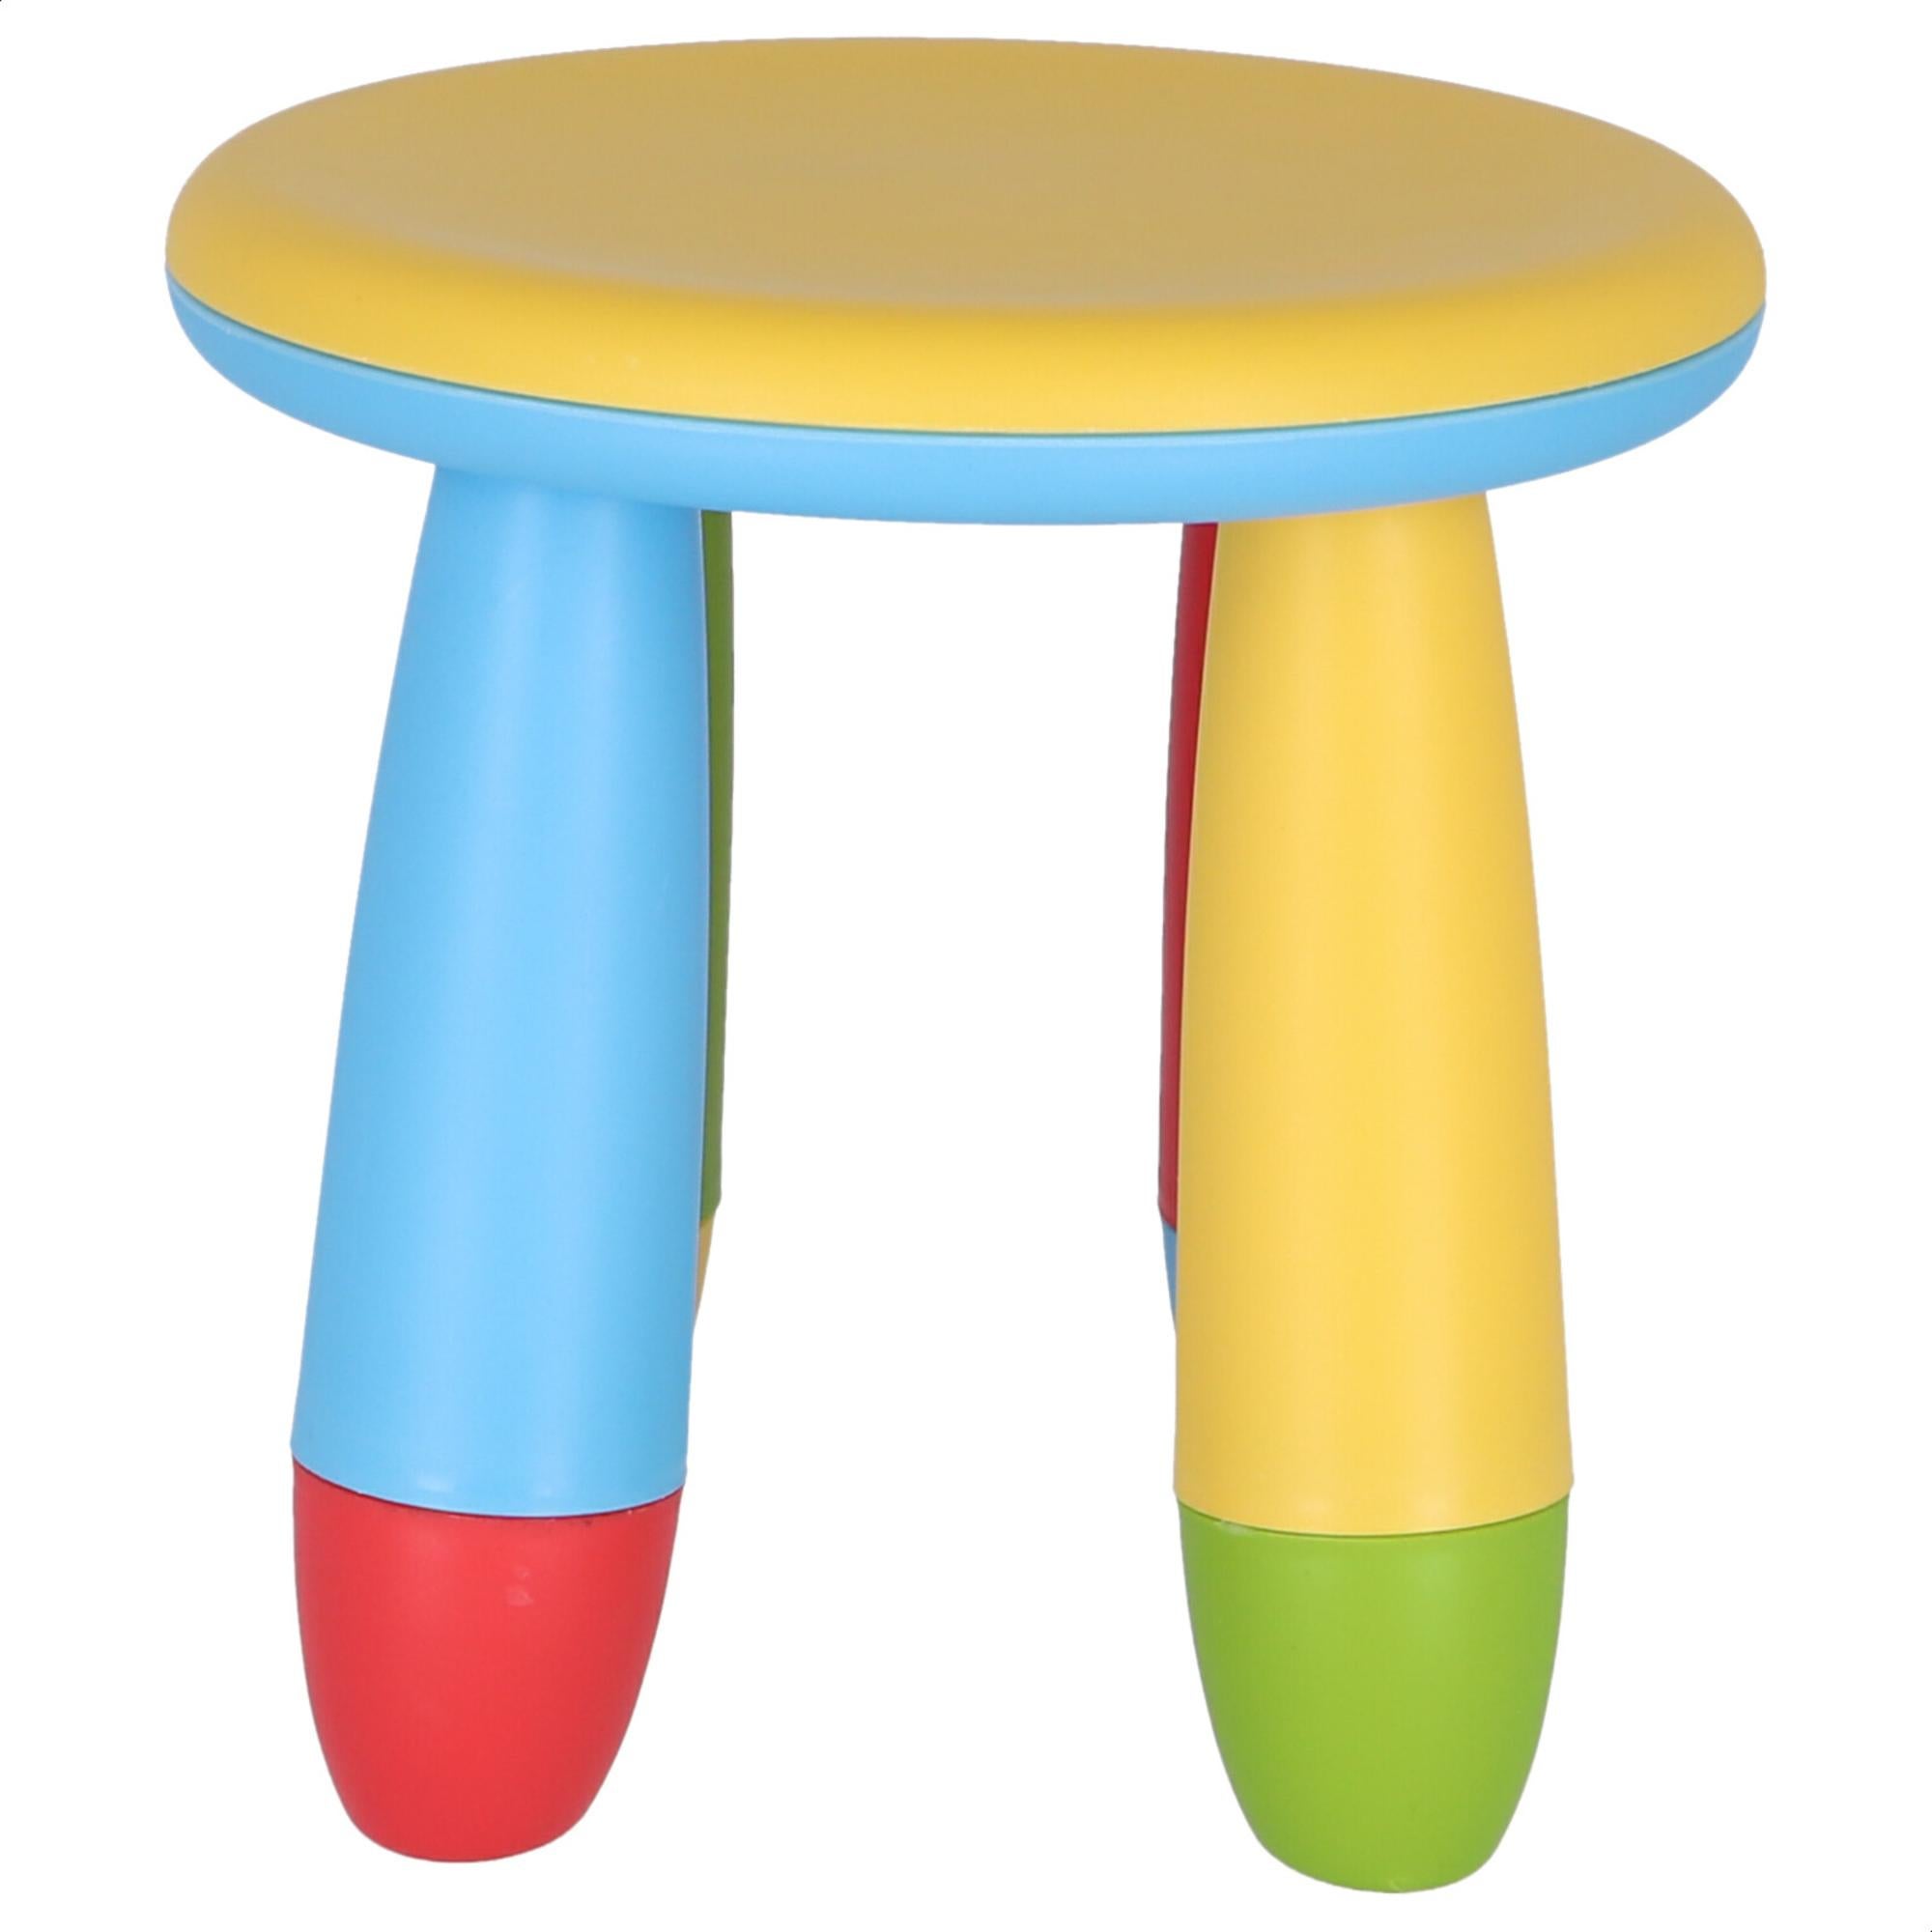 Taburete infantil de plástico color amarillo y patas multicolor de 30x26x30 cm